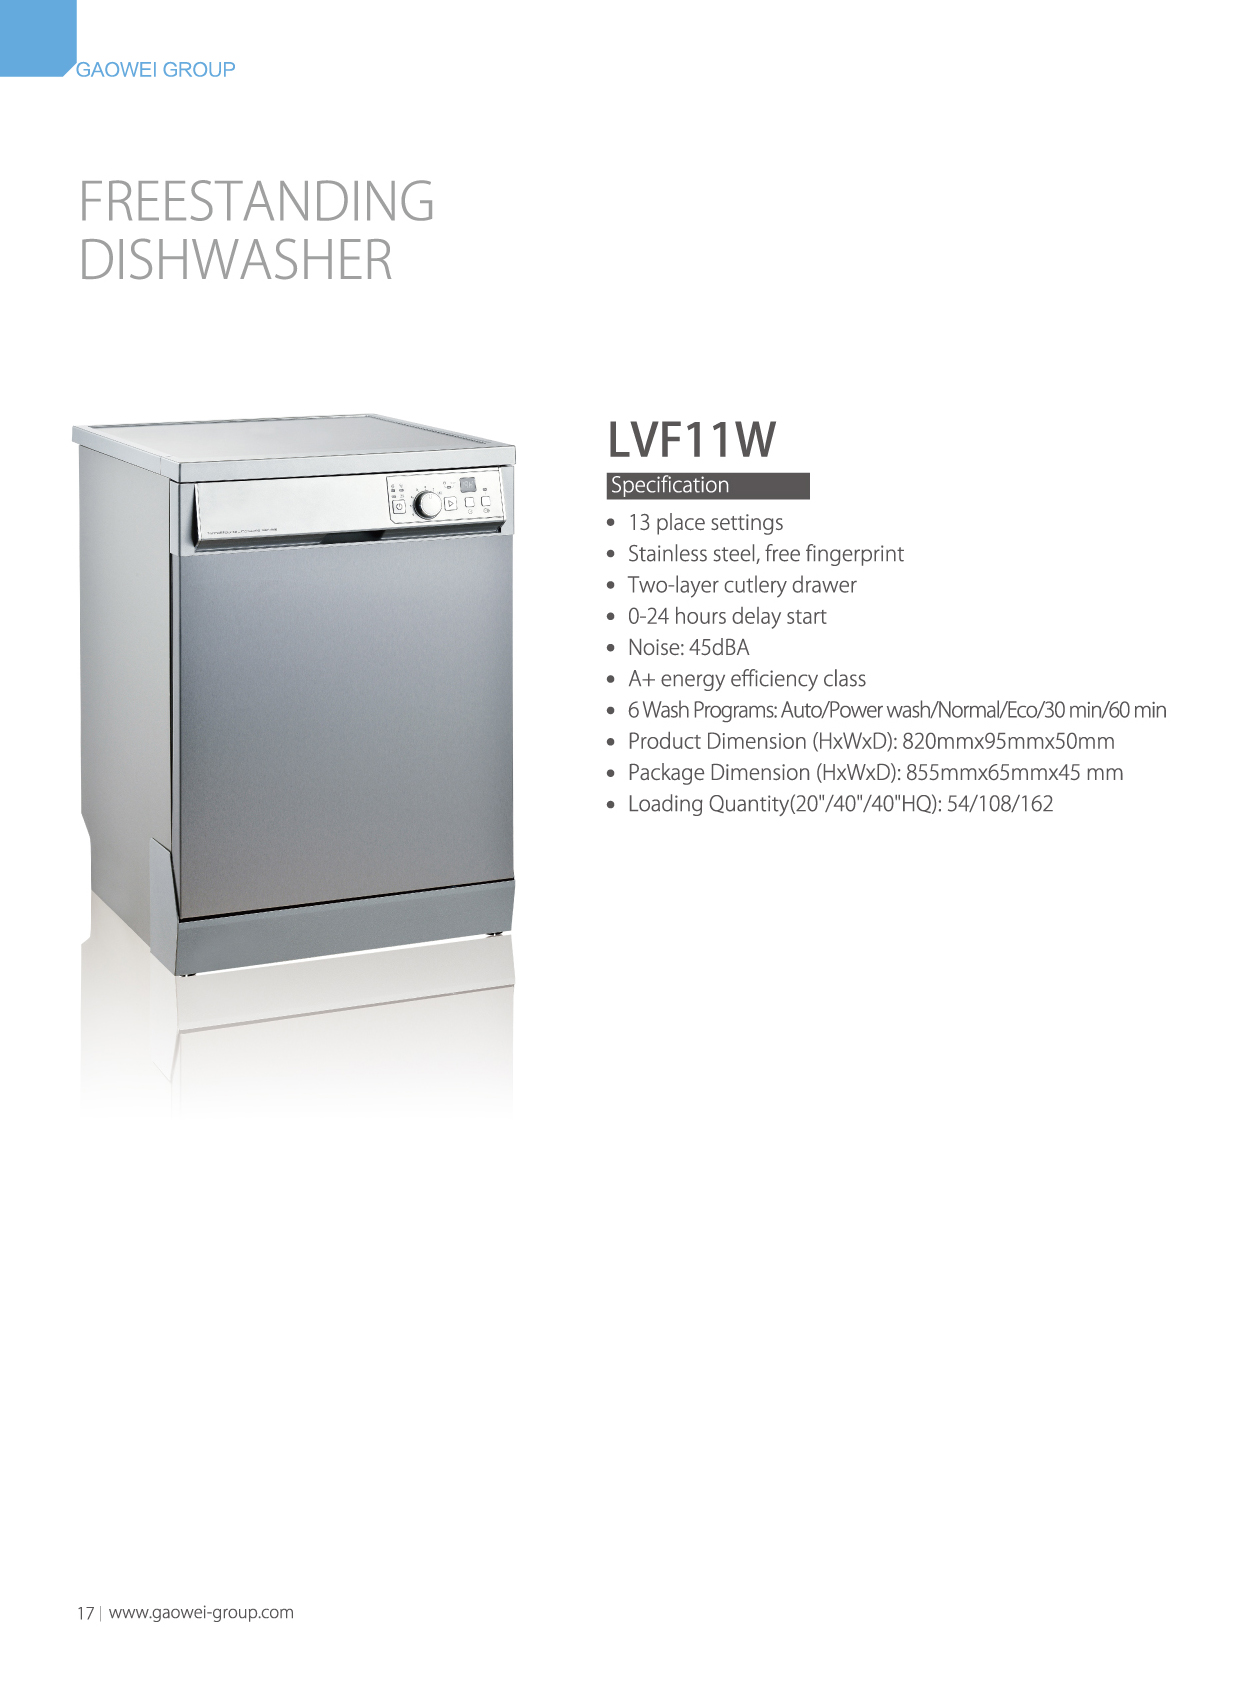 Cabinet dishwasher